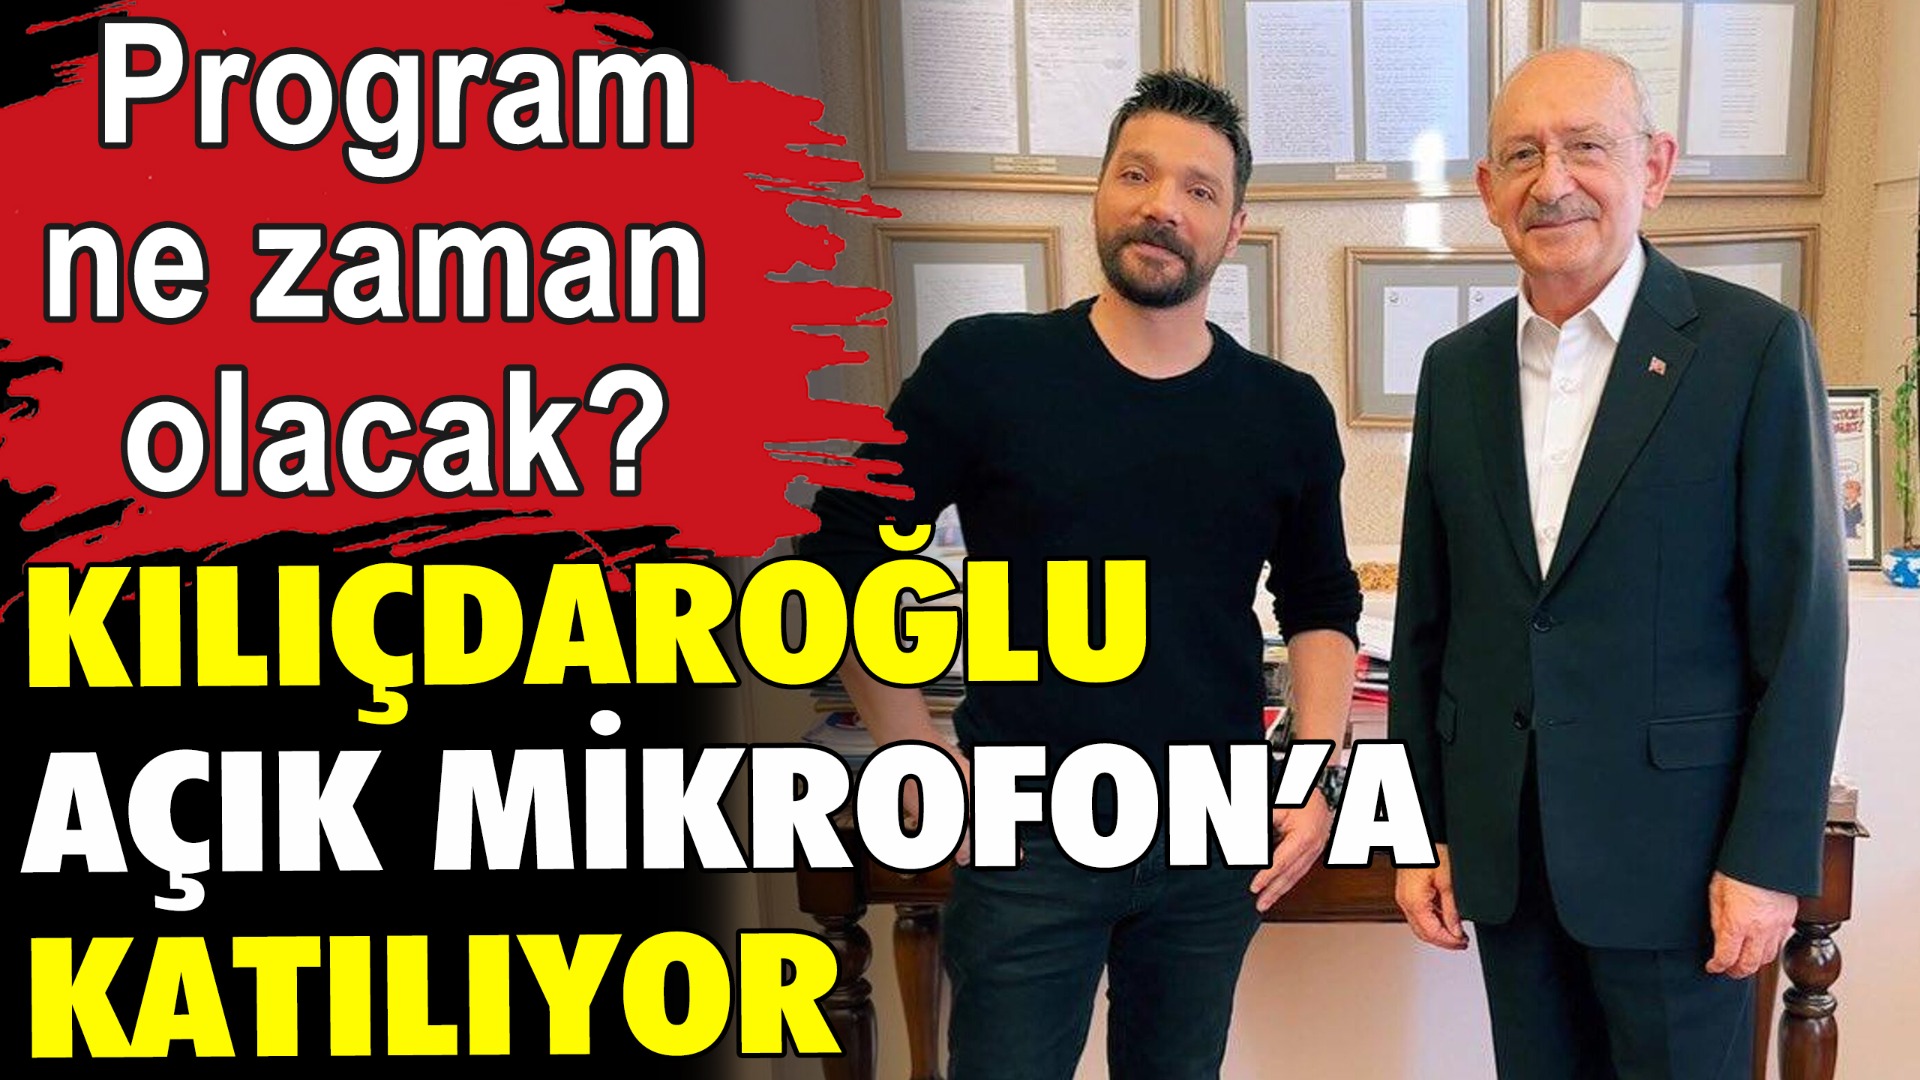 Kılıçdaroğlu, Mevzular Açık Mikrofona çıkacak